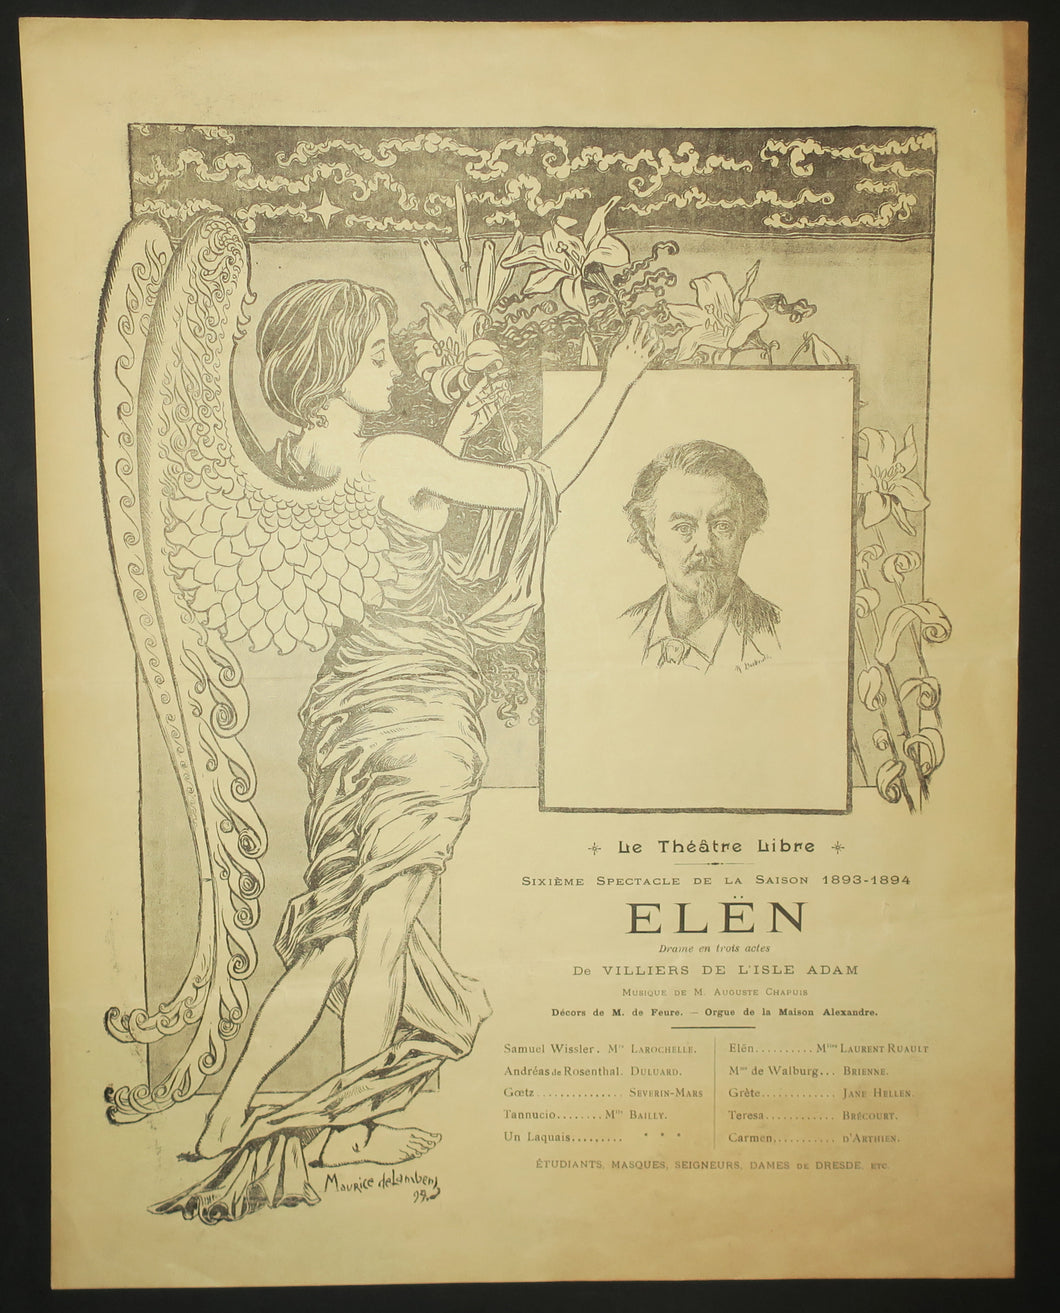 Programme pour le Théâtre Libre: Elën par Auguste Villiers de L'Isle-Adam, 6ème spectacle de la saison 1893-1894.